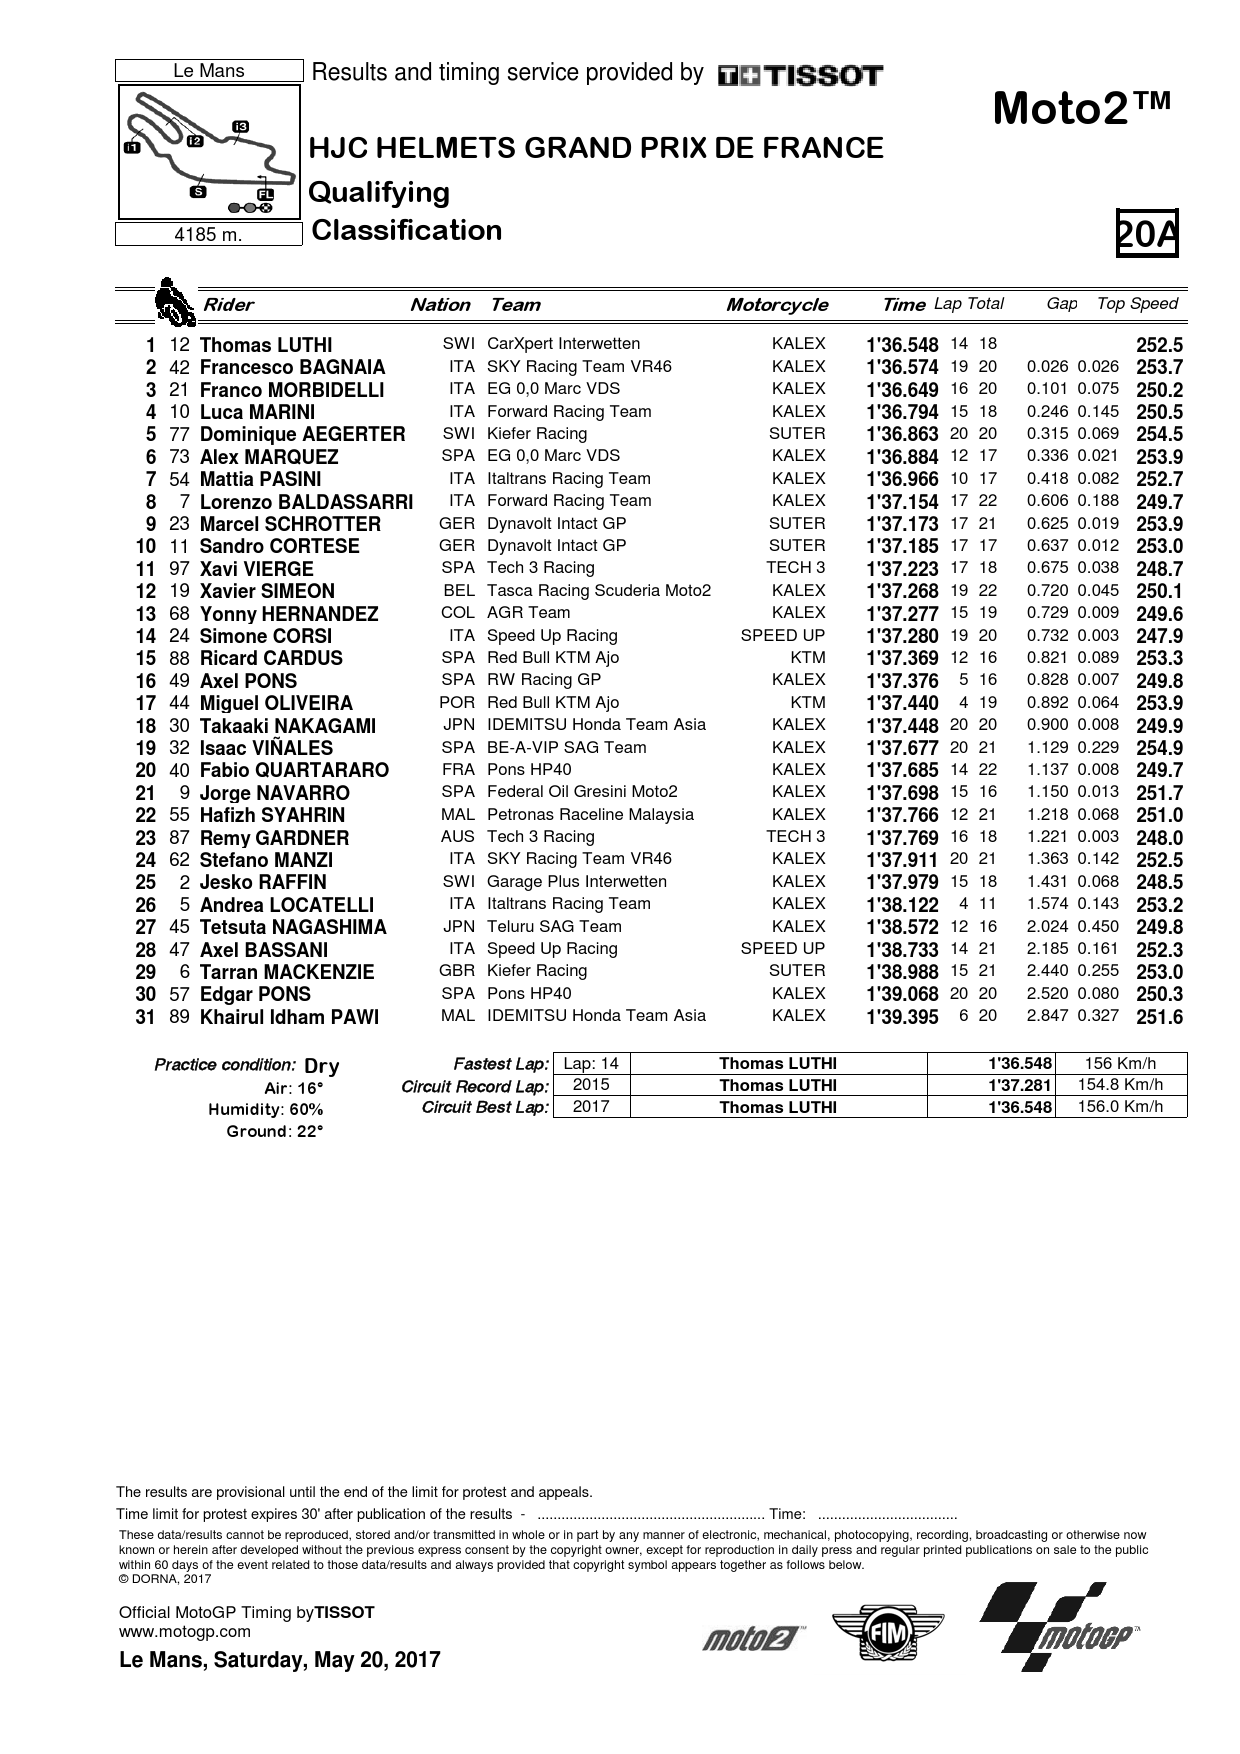 Результаты квалификации Гран-При Франции Moto2